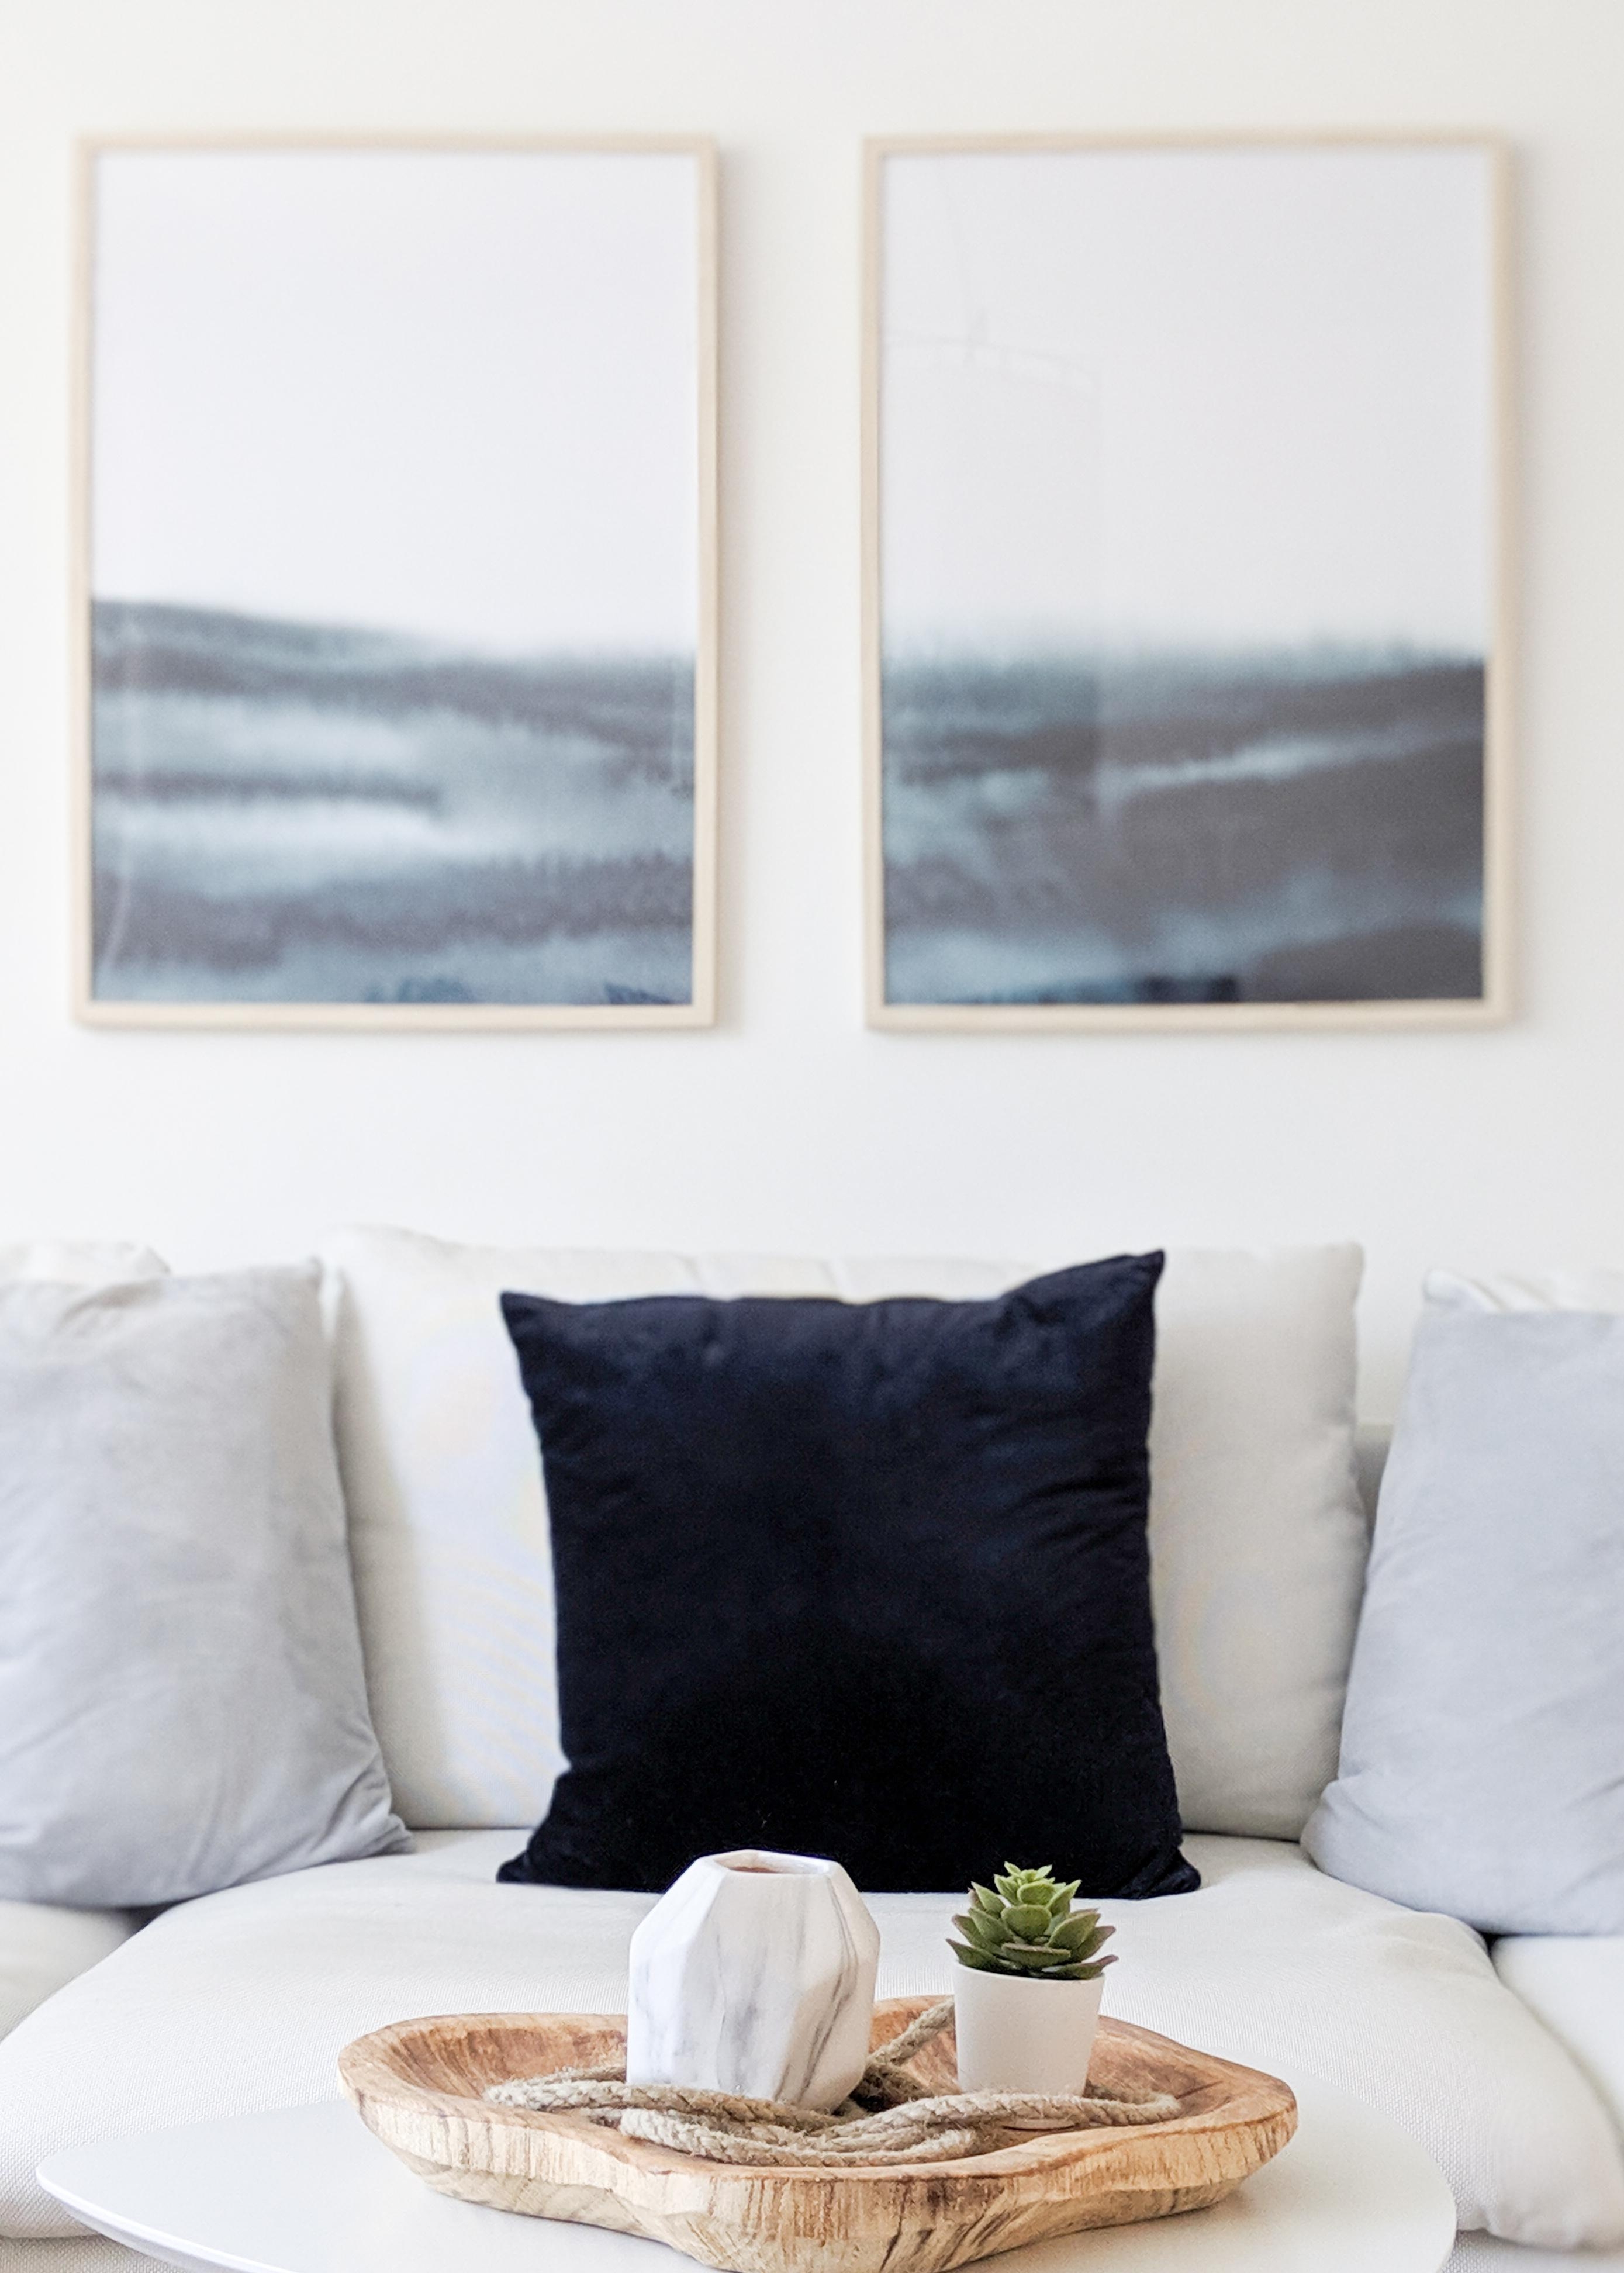 Jetzt auf die Couch 💤
#couch #wohnzimmer #kissen #whiteliving #deko #ikea #söderhamn